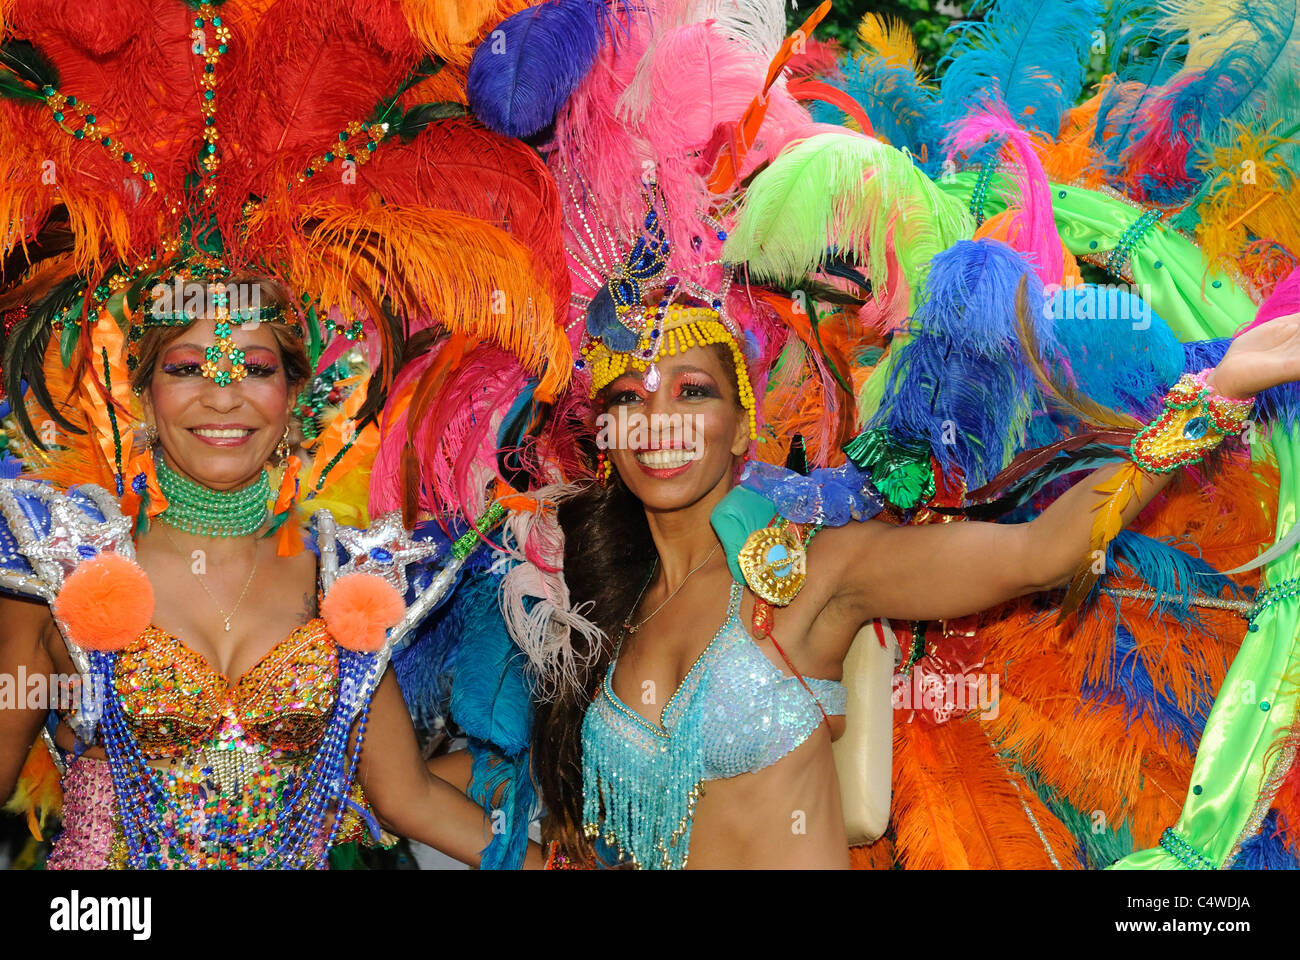 Karneval der Kulturen, Carnaval des Cultures, Berlin, Kreuzberg, Germany, Europe Banque D'Images